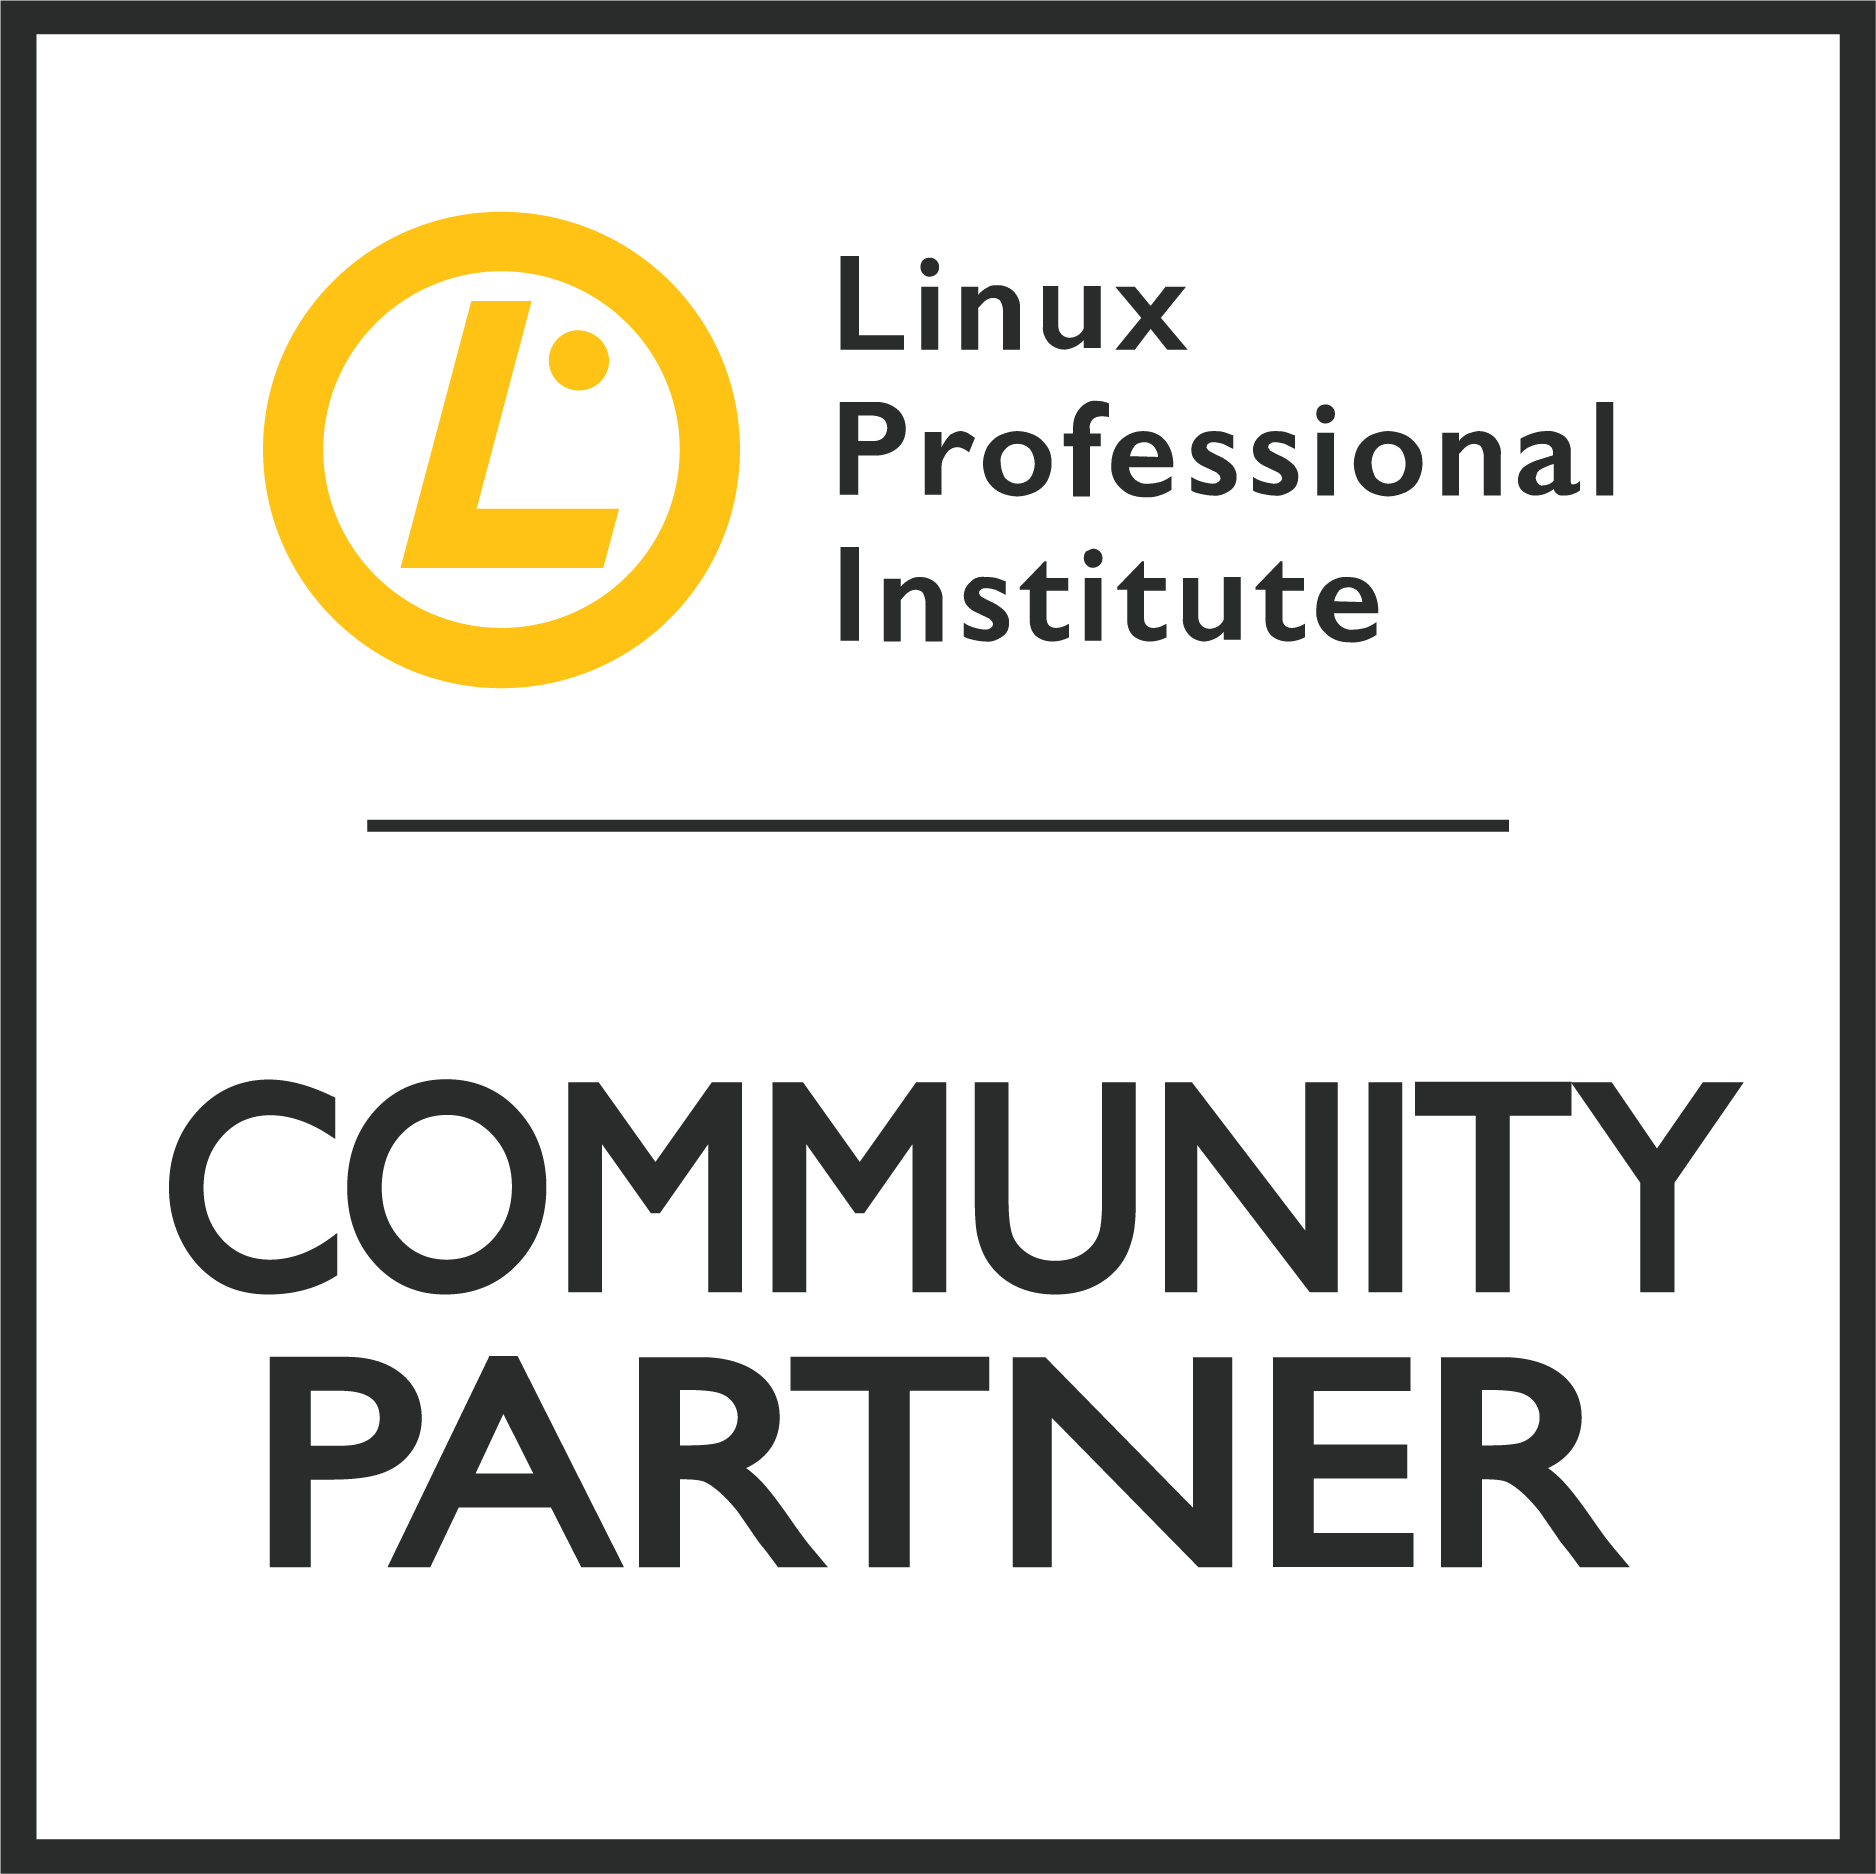 LPI-CommunityPartner-min